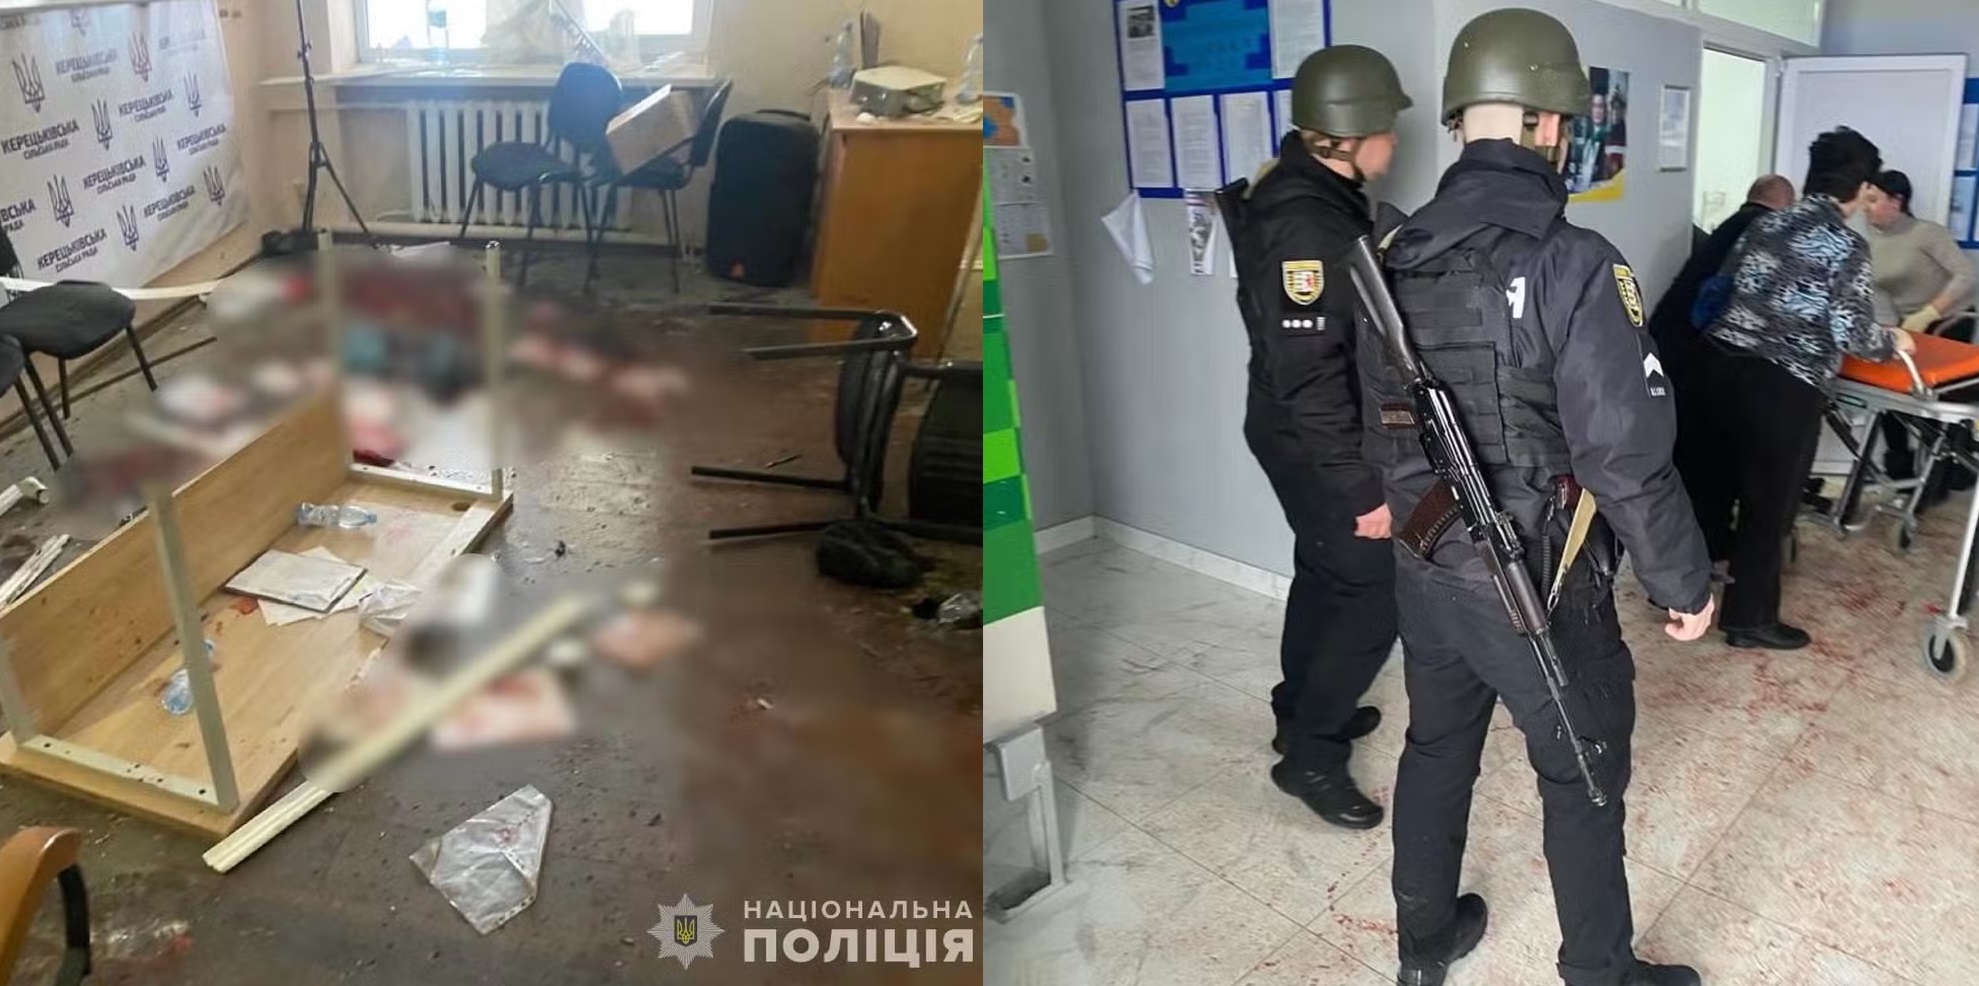 Deputado explodiu granadas em sala de reunião em prefeitura no oeste da Ucrânia